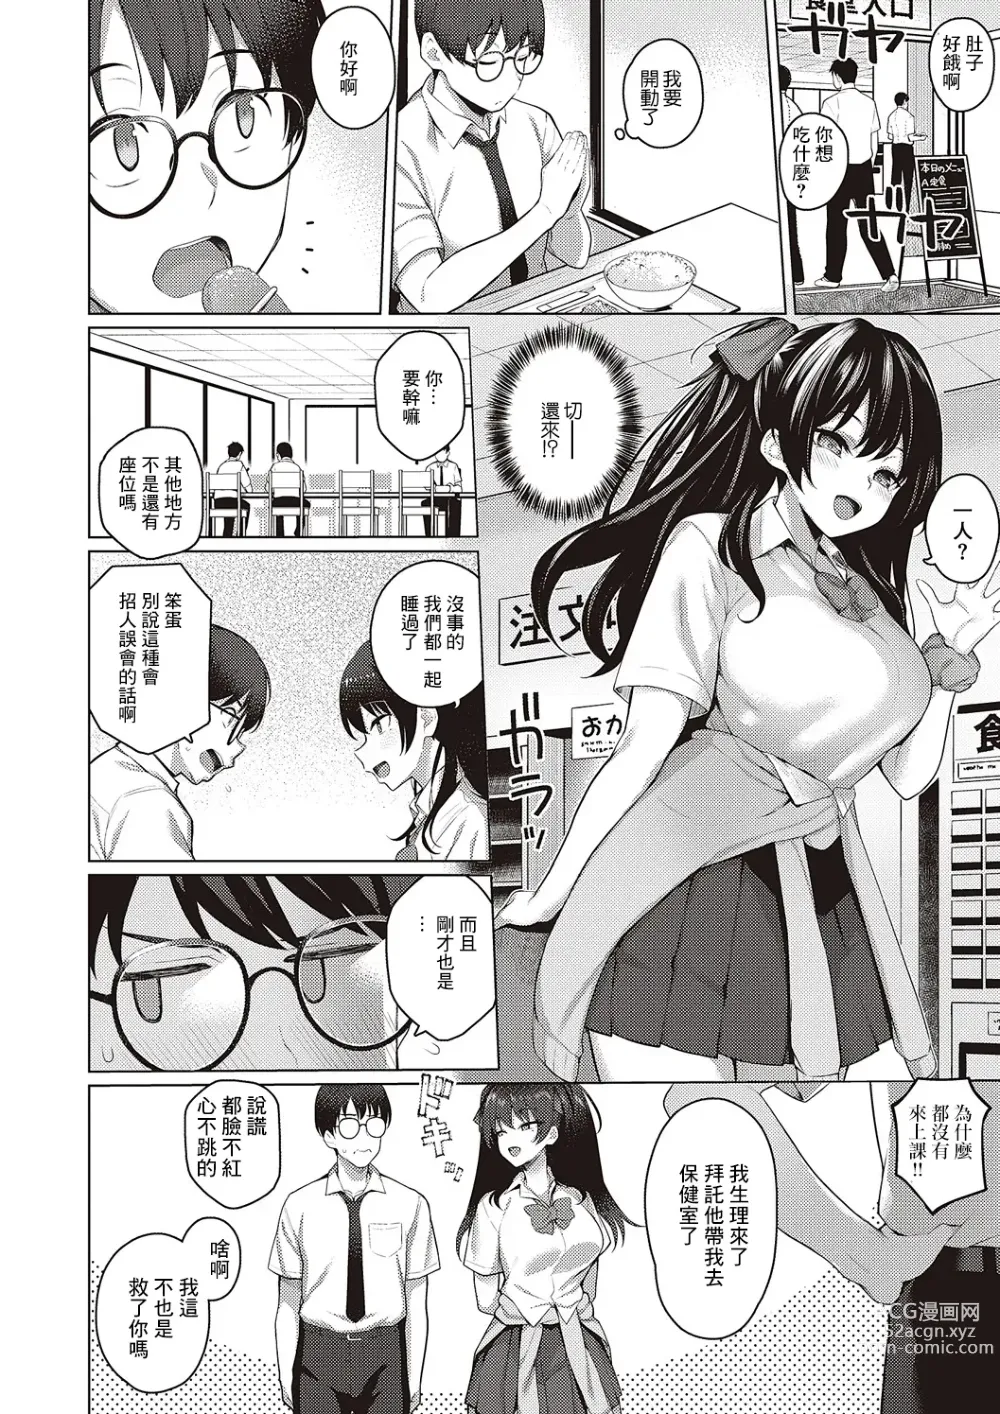 Page 6 of manga Majime to Fumajime